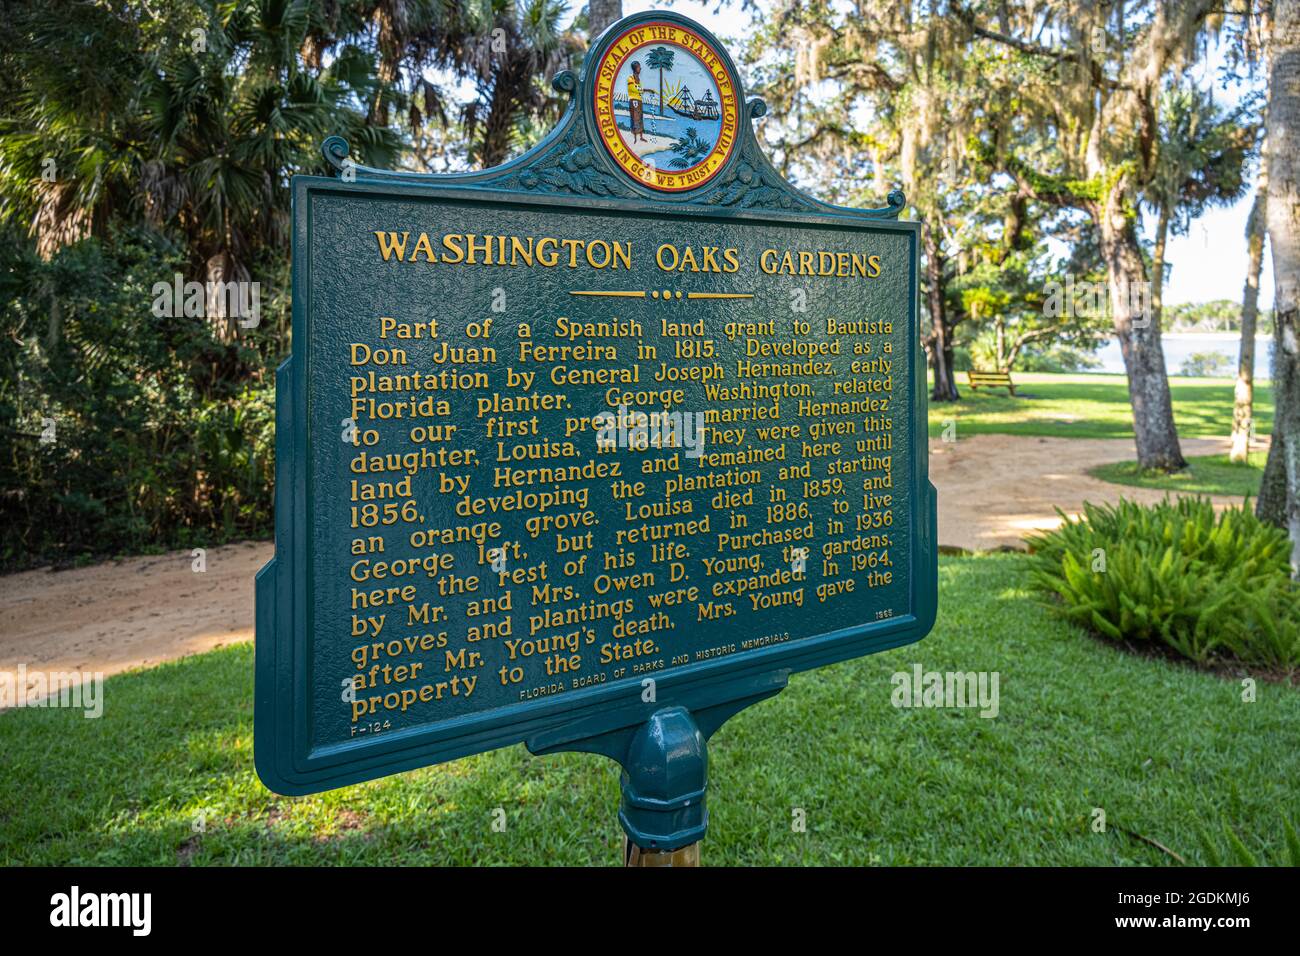 Marqueur historique des jardins de Washington Oaks à Palm Coast, en Floride. (ÉTATS-UNIS) Banque D'Images